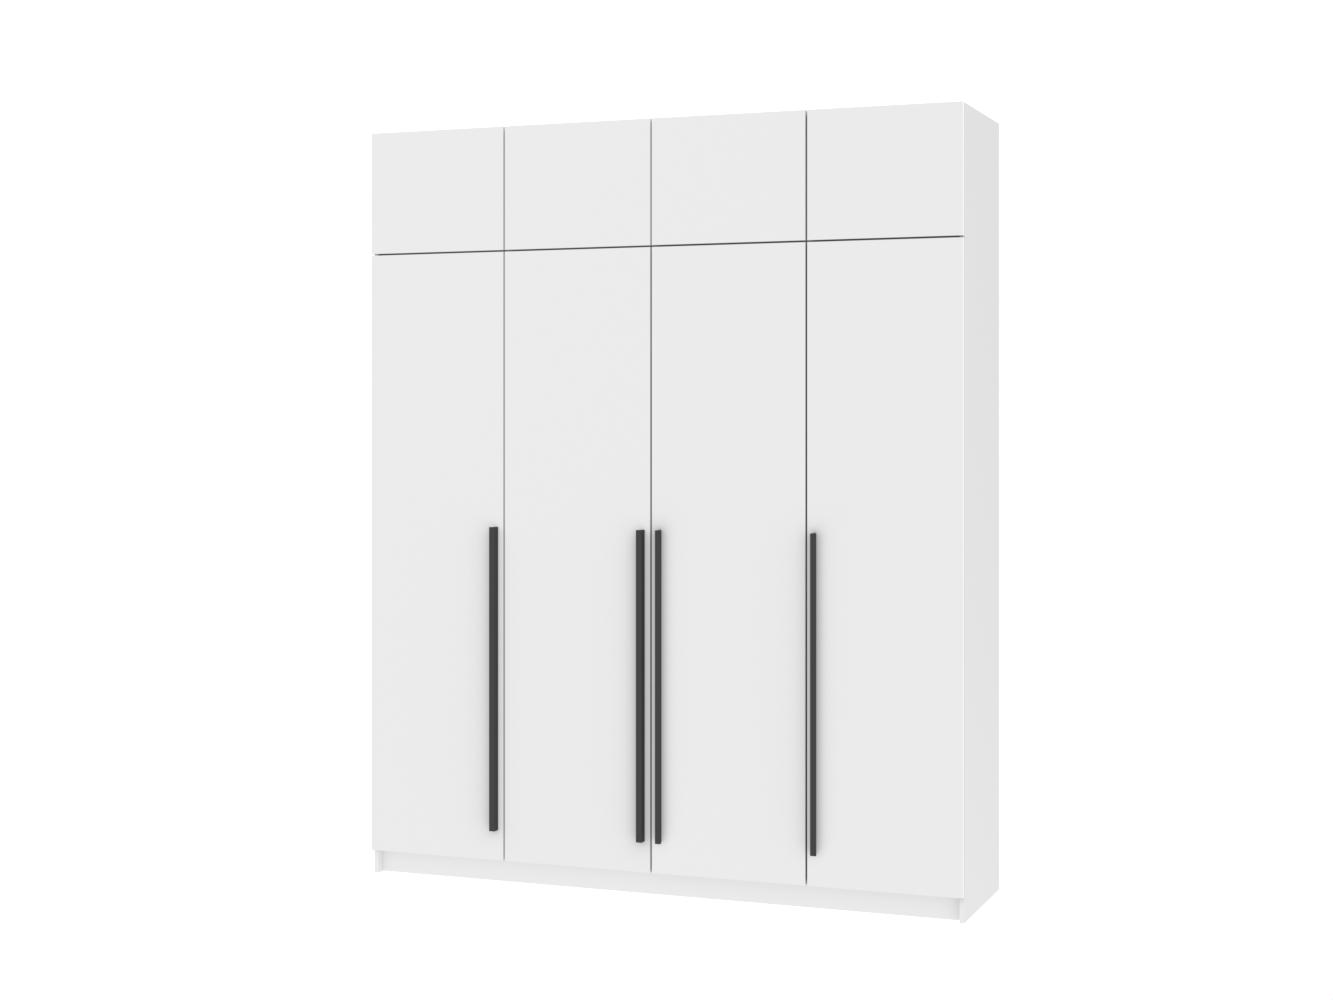  Распашной шкаф Пакс Фардал 31 white ИКЕА (IKEA) изображение товара